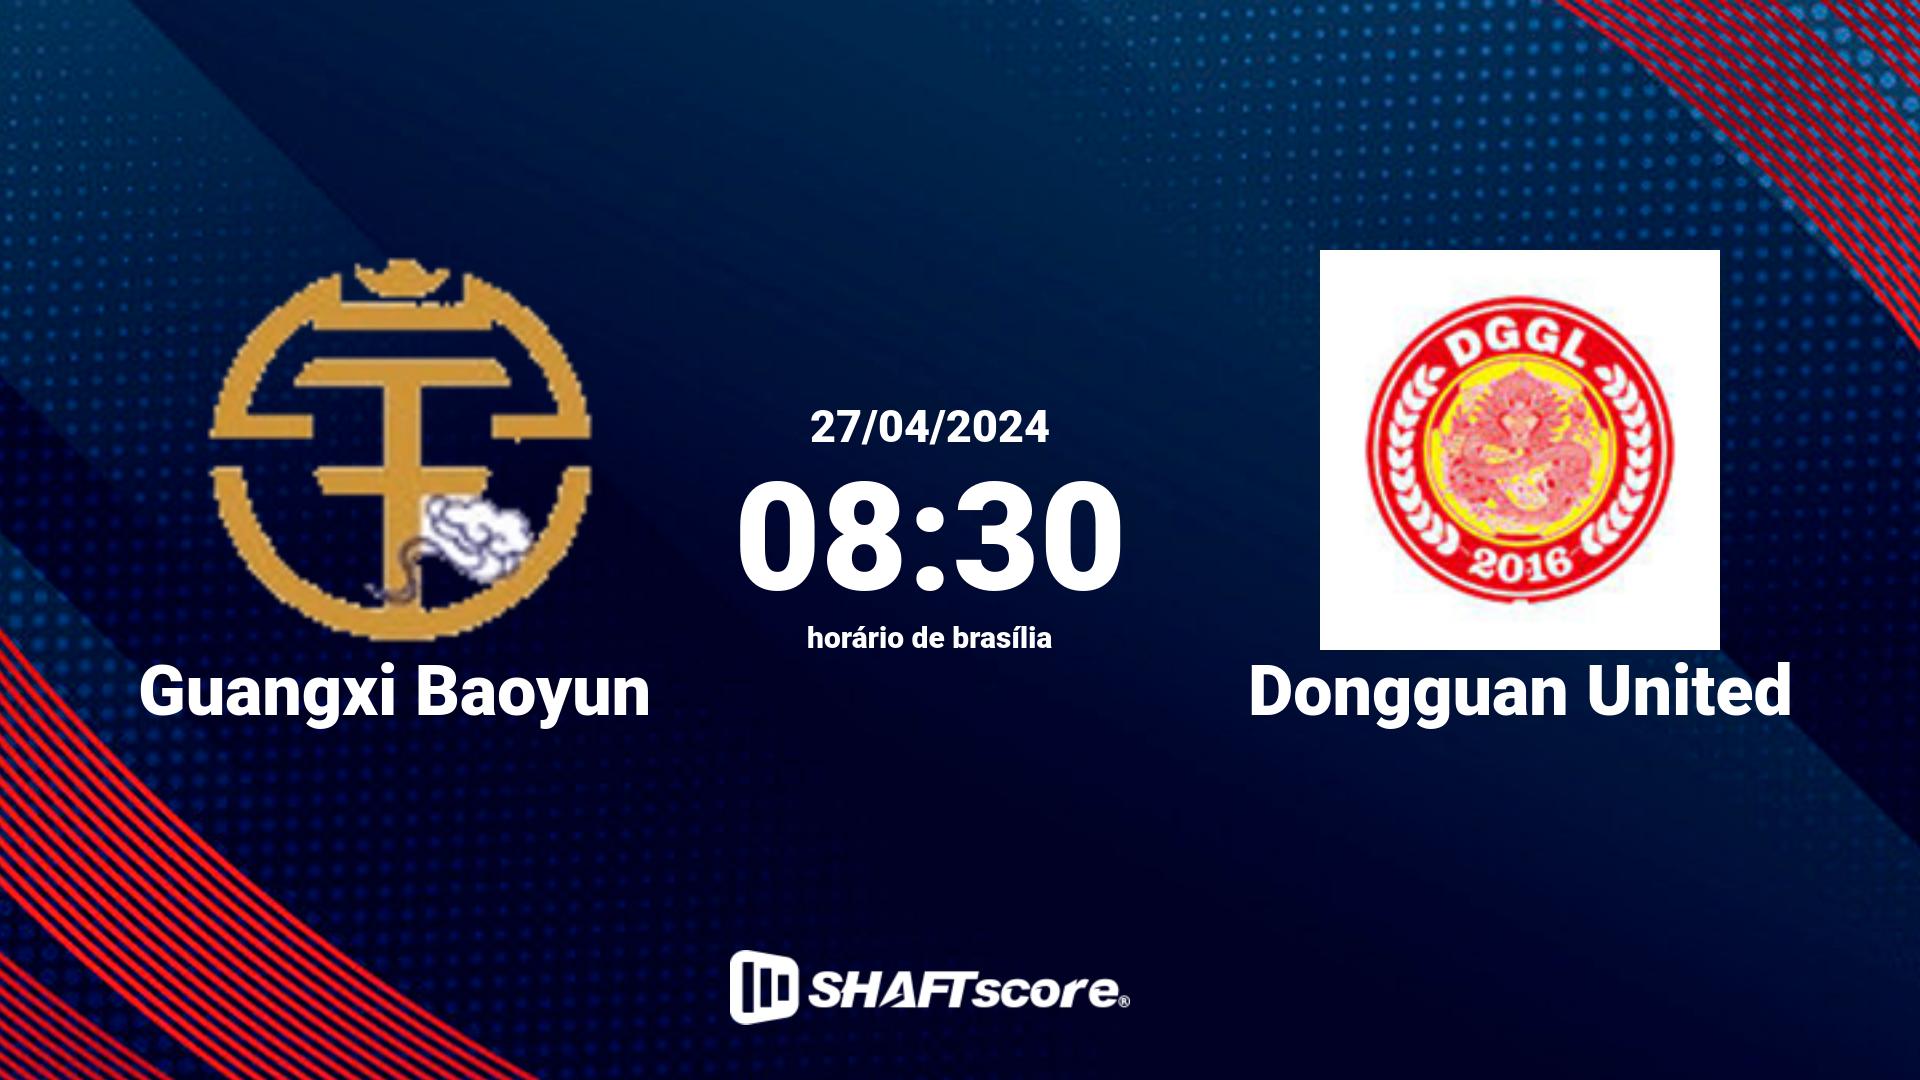 Estatísticas do jogo Guangxi Baoyun vs Dongguan United 27.04 08:30